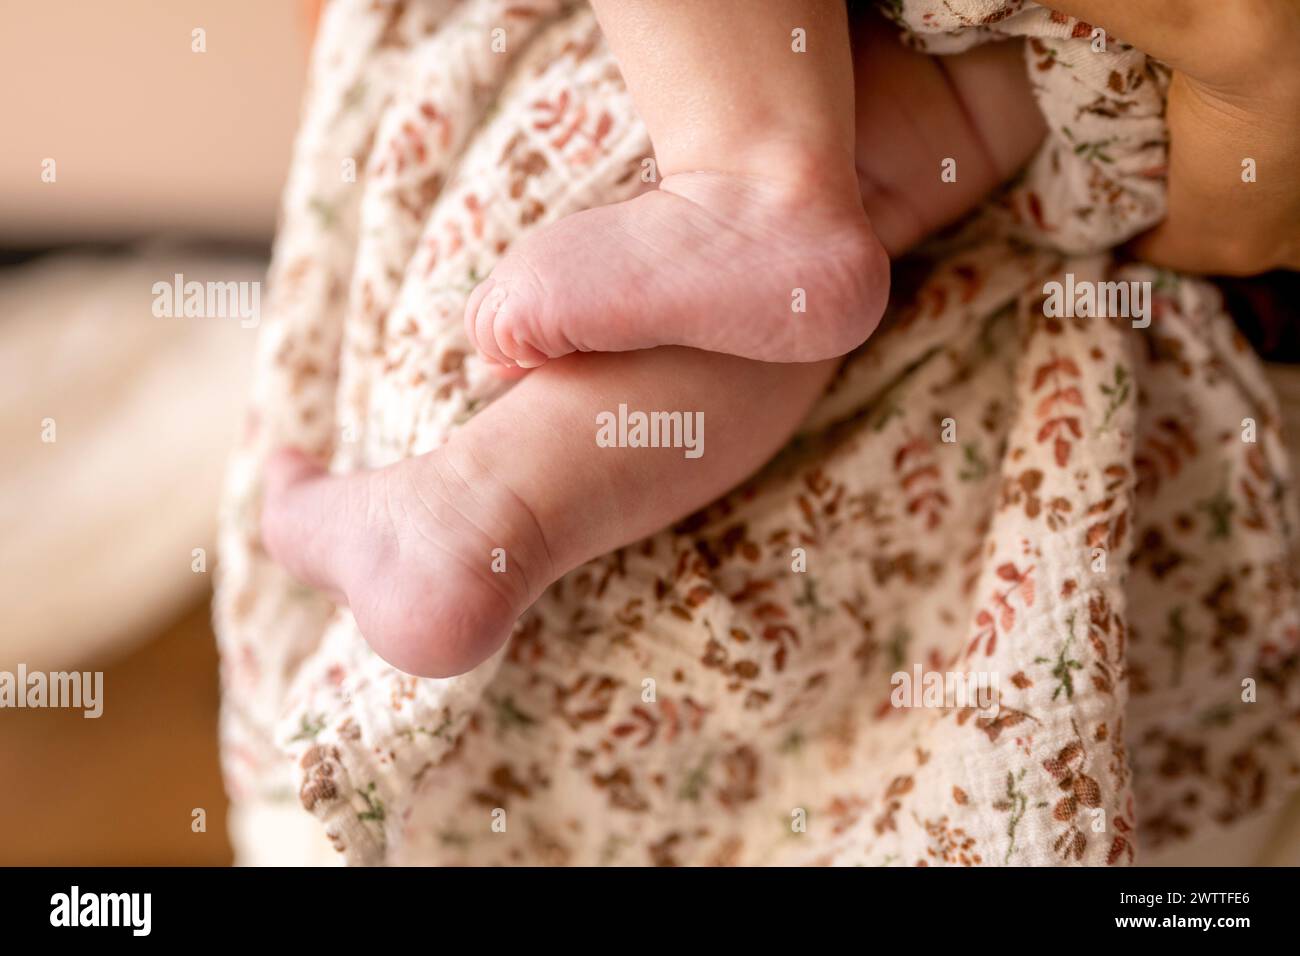 Piccoli piedi racchiusi tra braccia amorevoli. Foto Stock